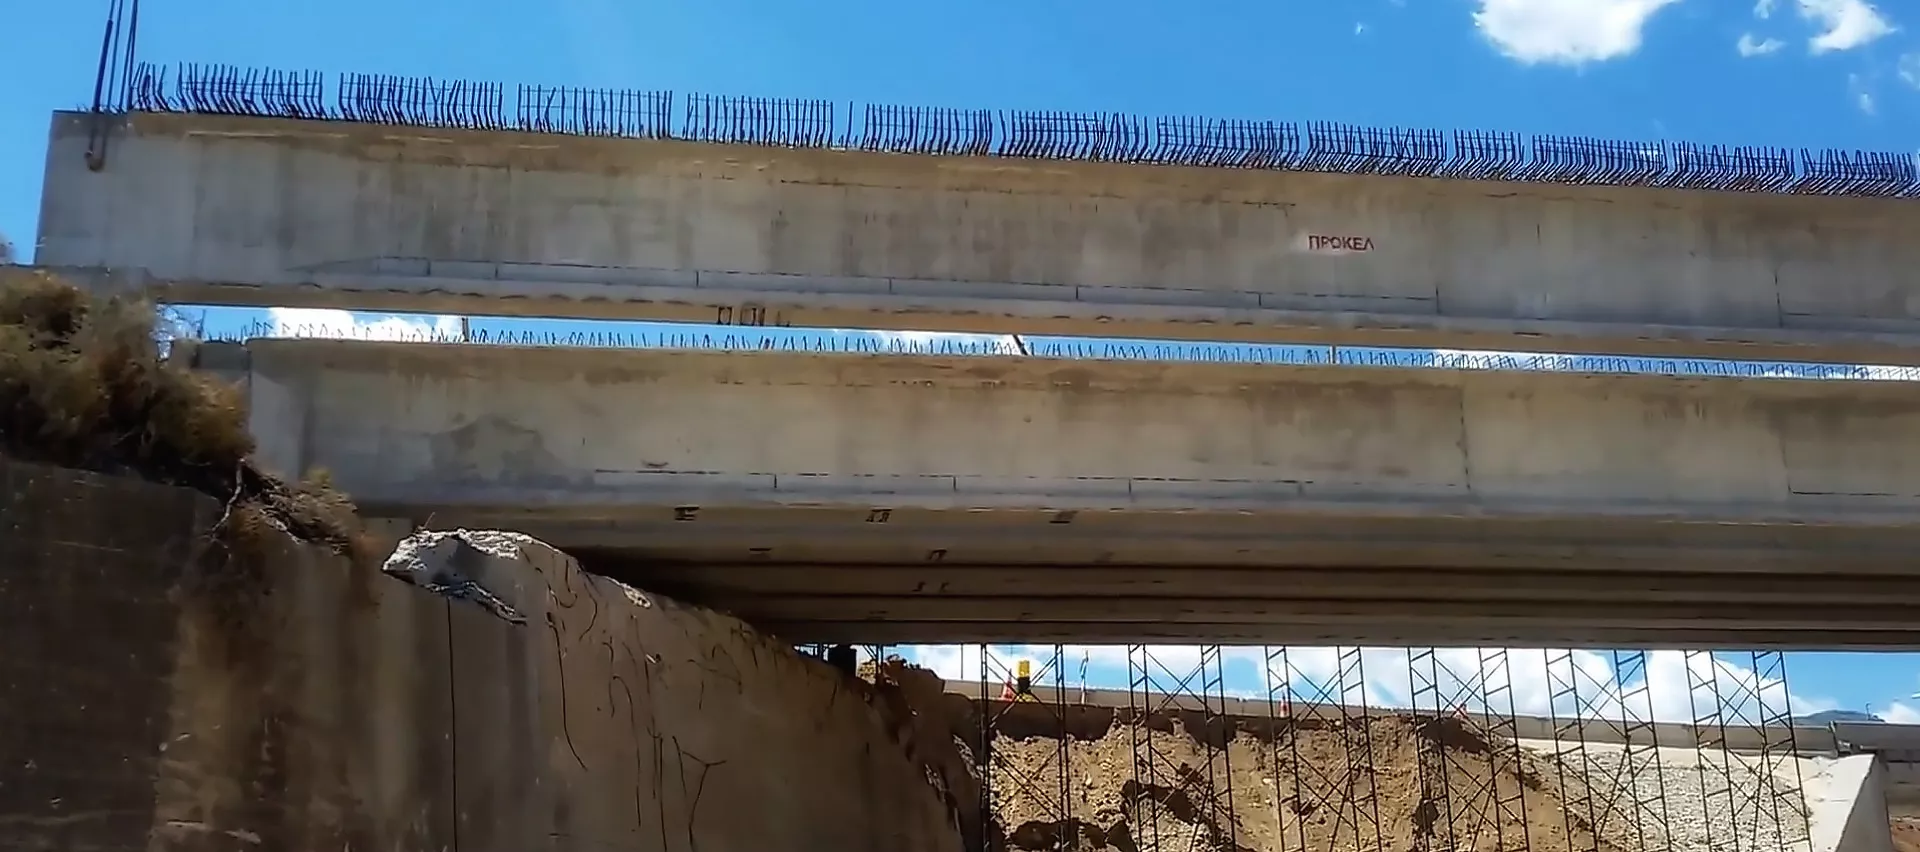 Προκατ δοκοί ΠΡΟΚΕΛ στηρίζουν και συνθέτουν μέρος του καταστρώματος της γέφυρας Κριού